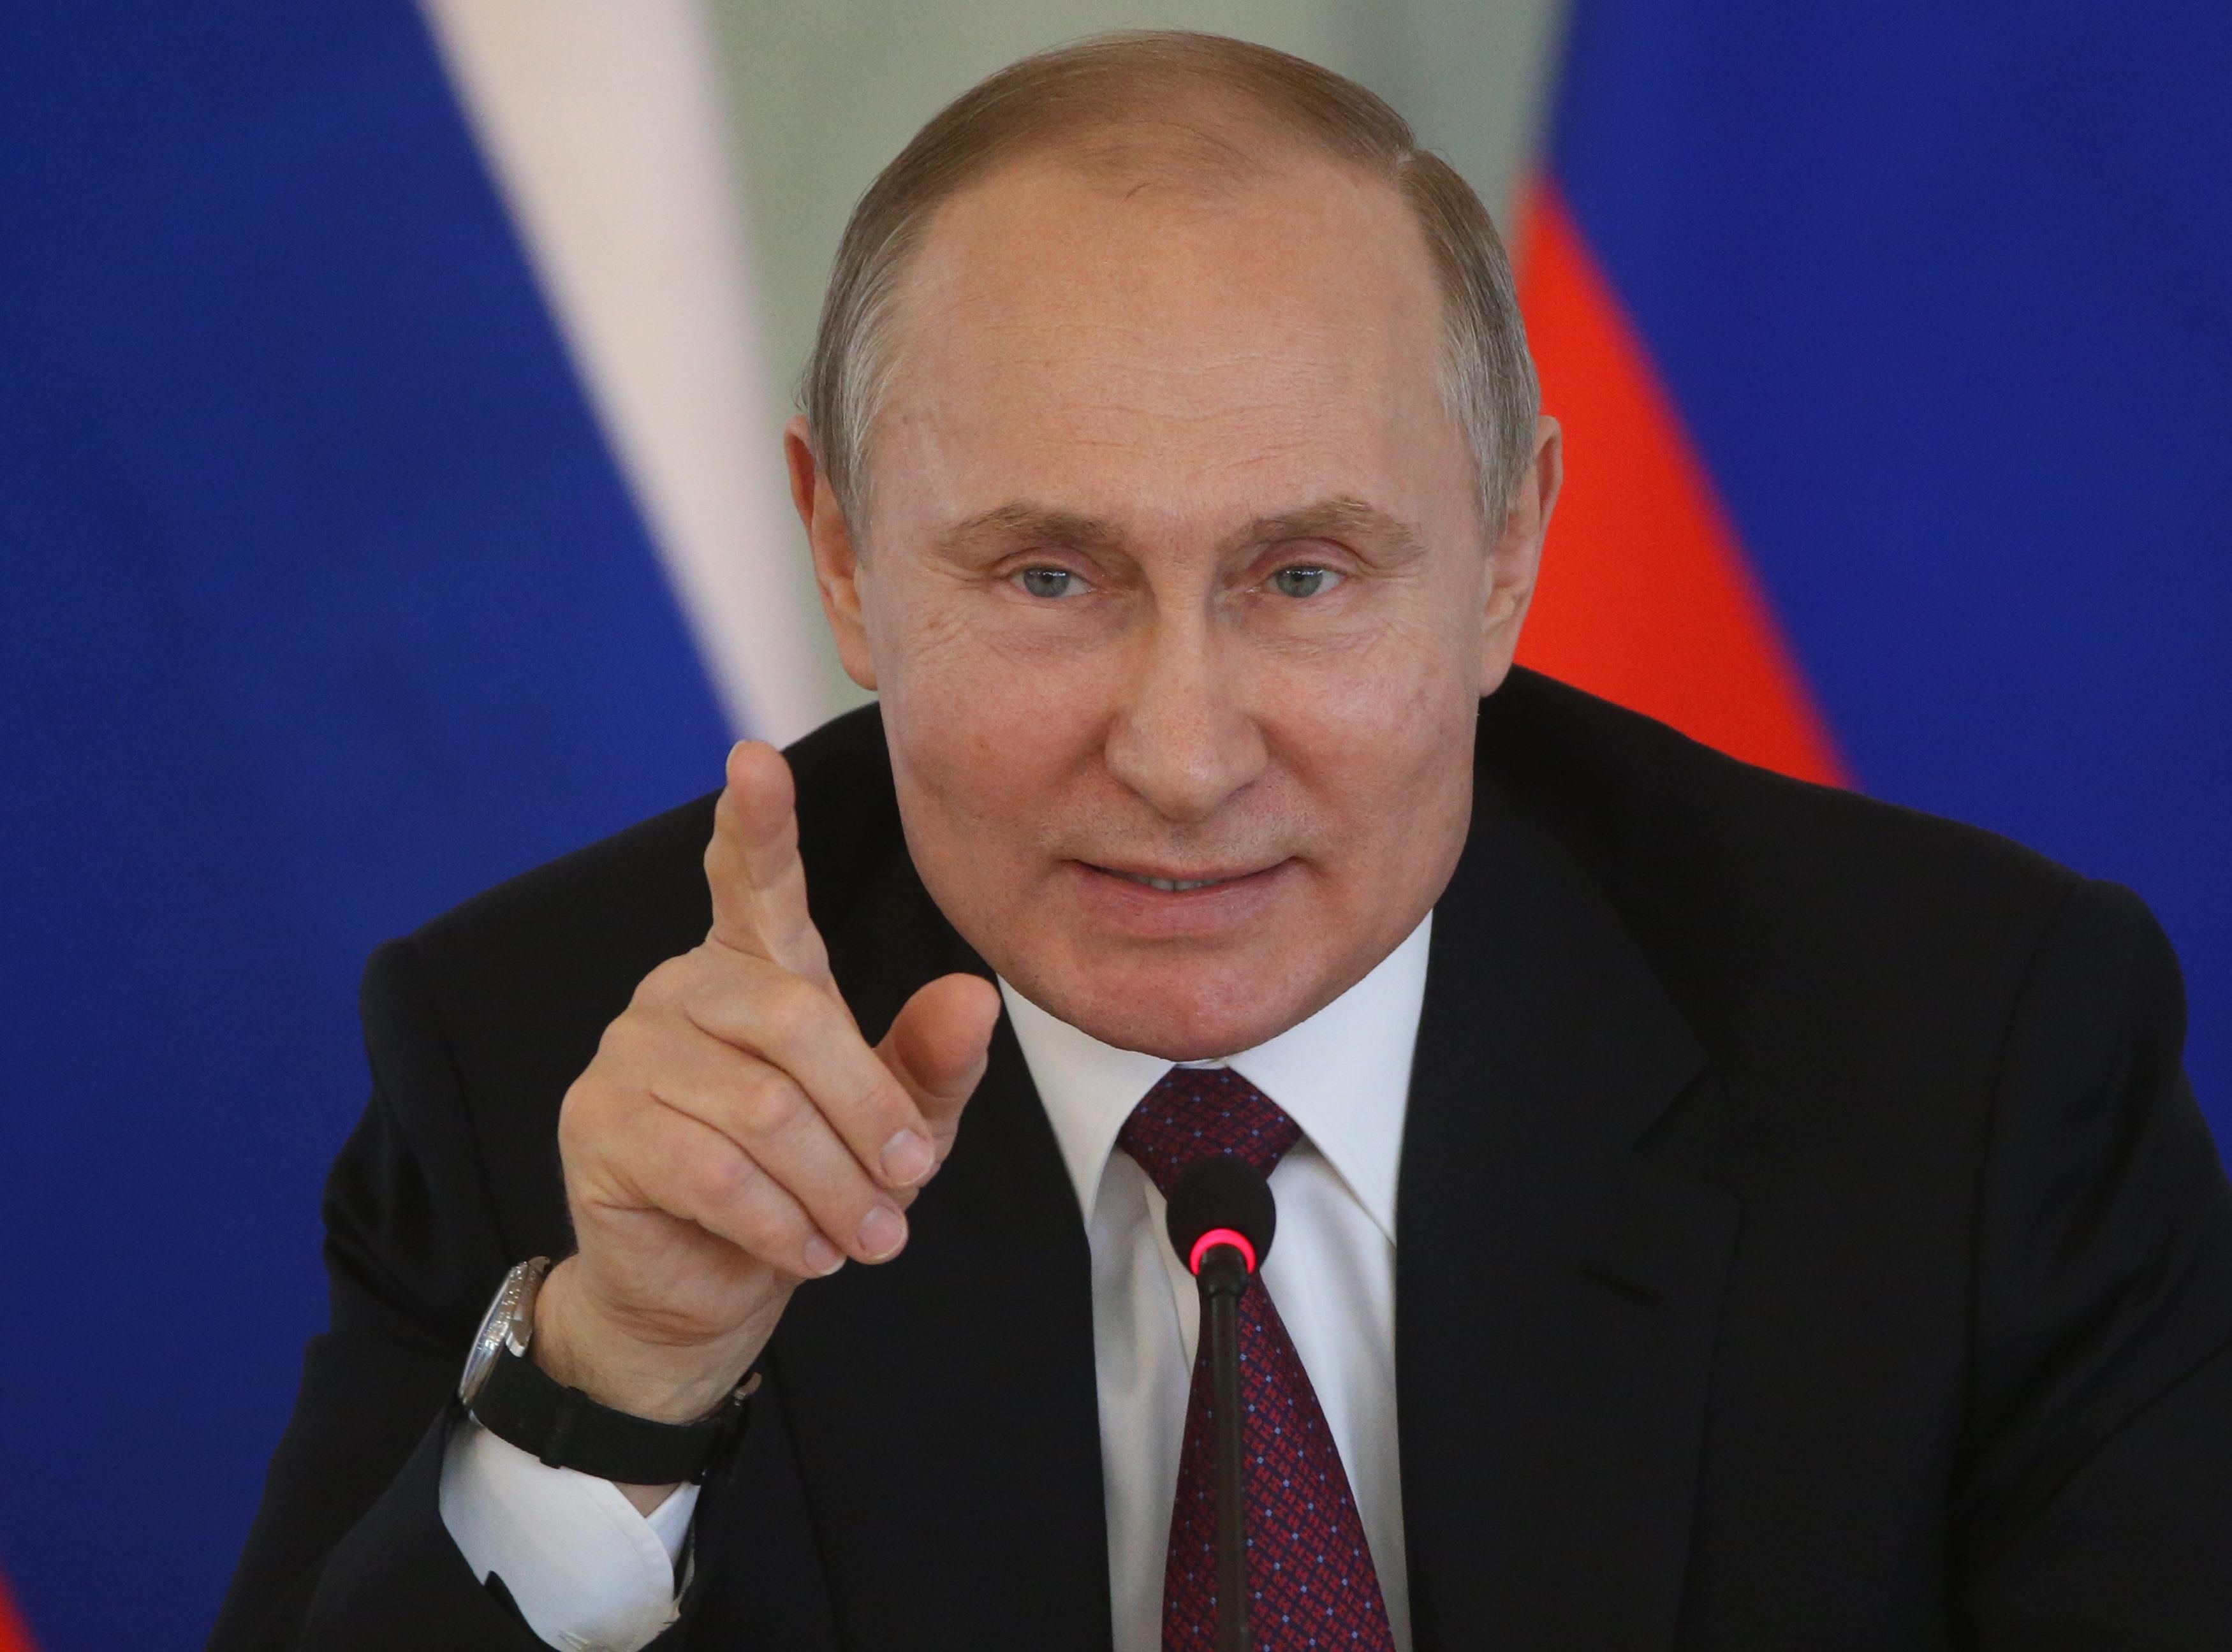 Дві потенційні мішені Путіна, – західні ЗМІ про те, чого очікувати після виборів президента у РФ